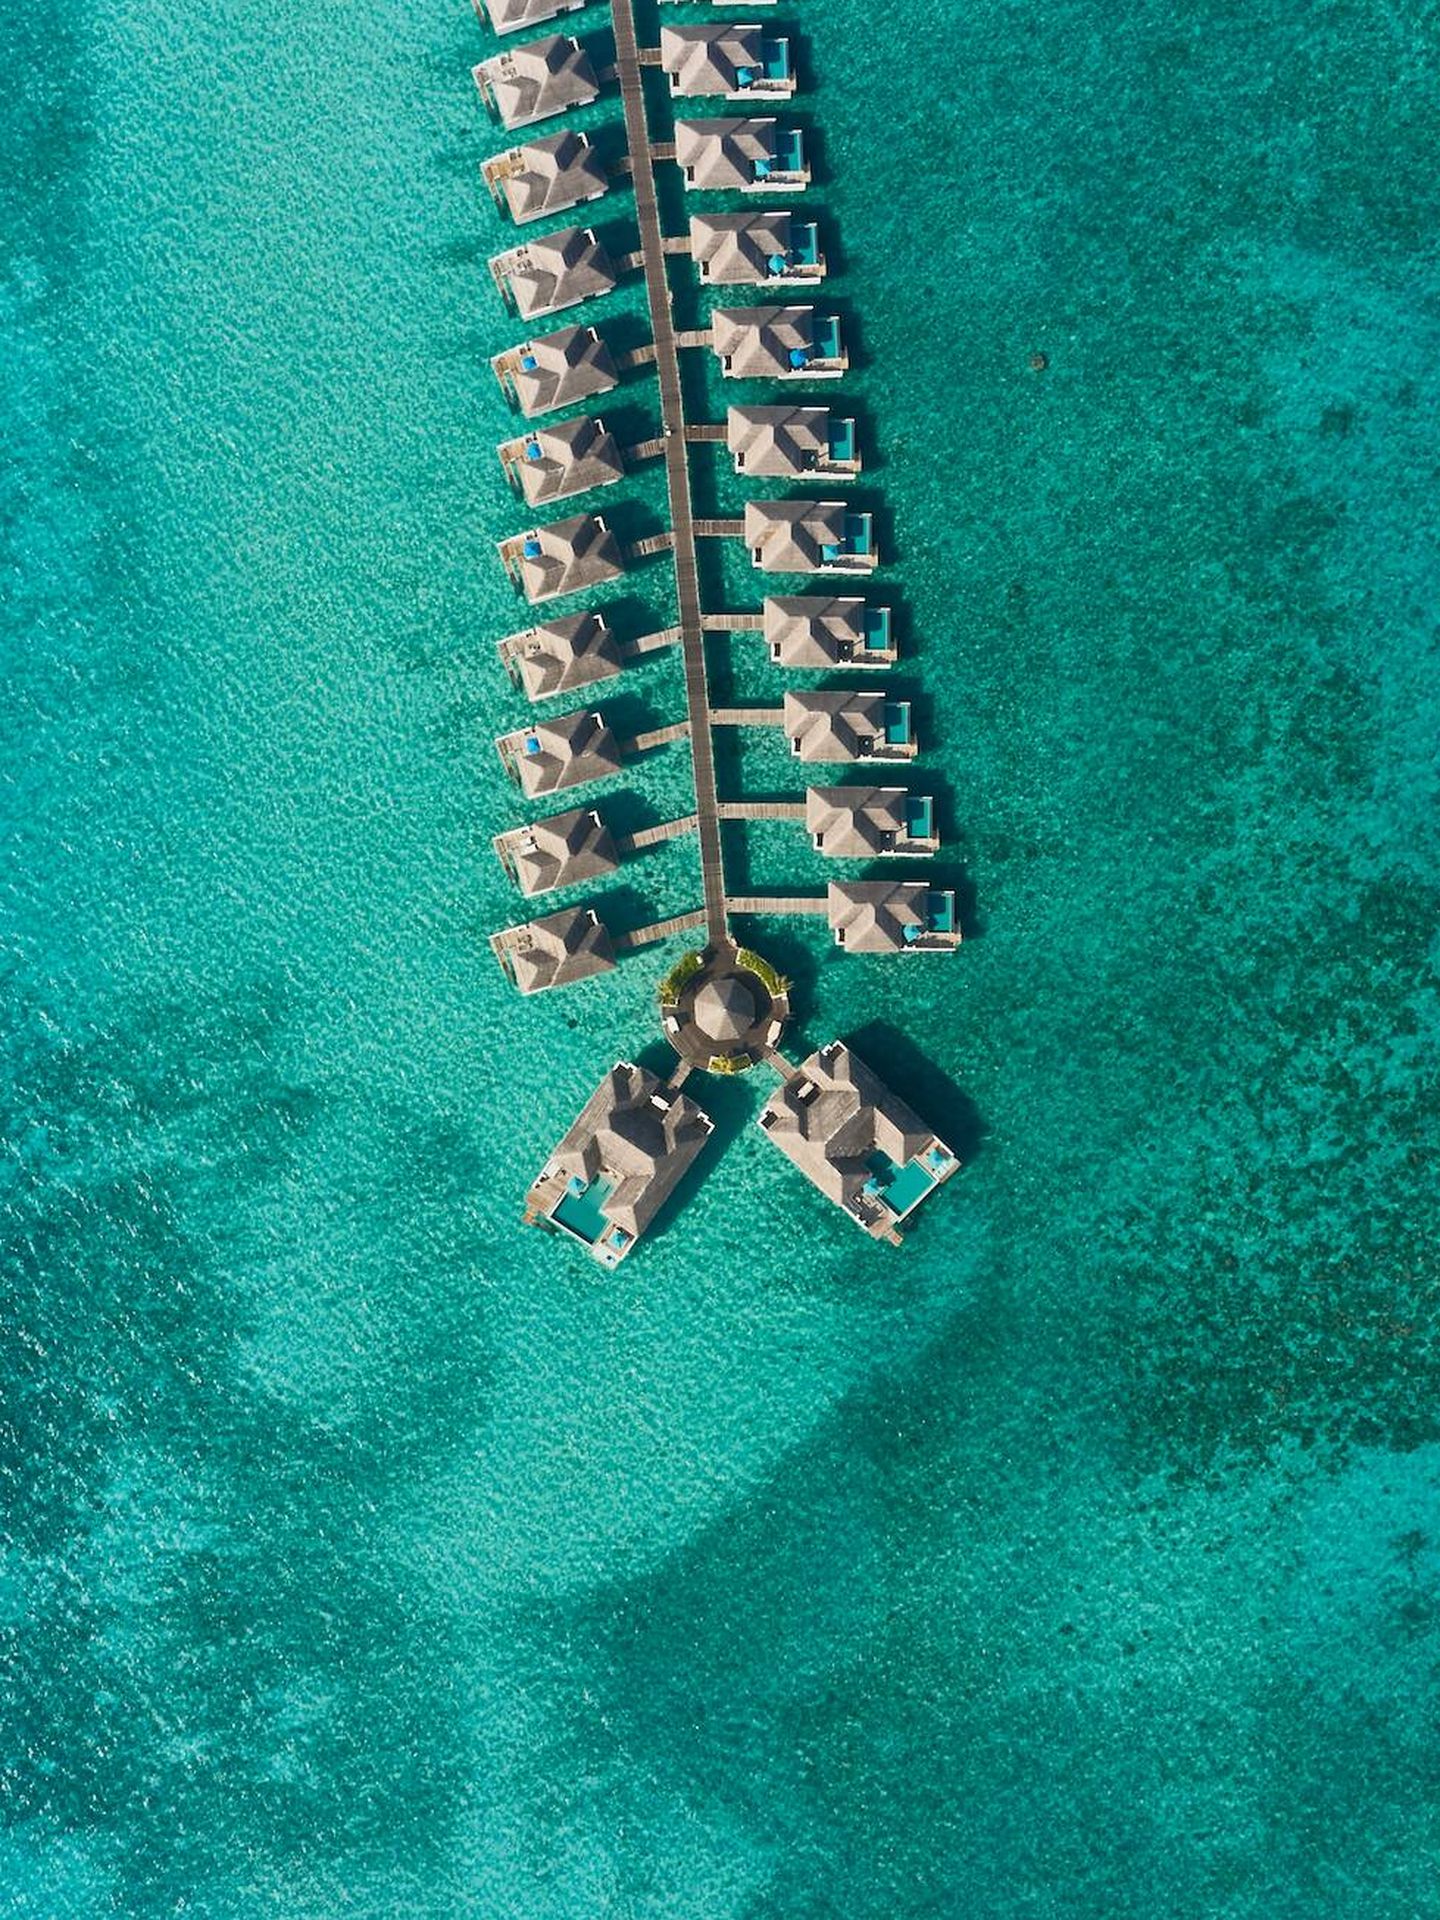 El espectacular atolón en el que se encuentra el hotel. (Cortesía)